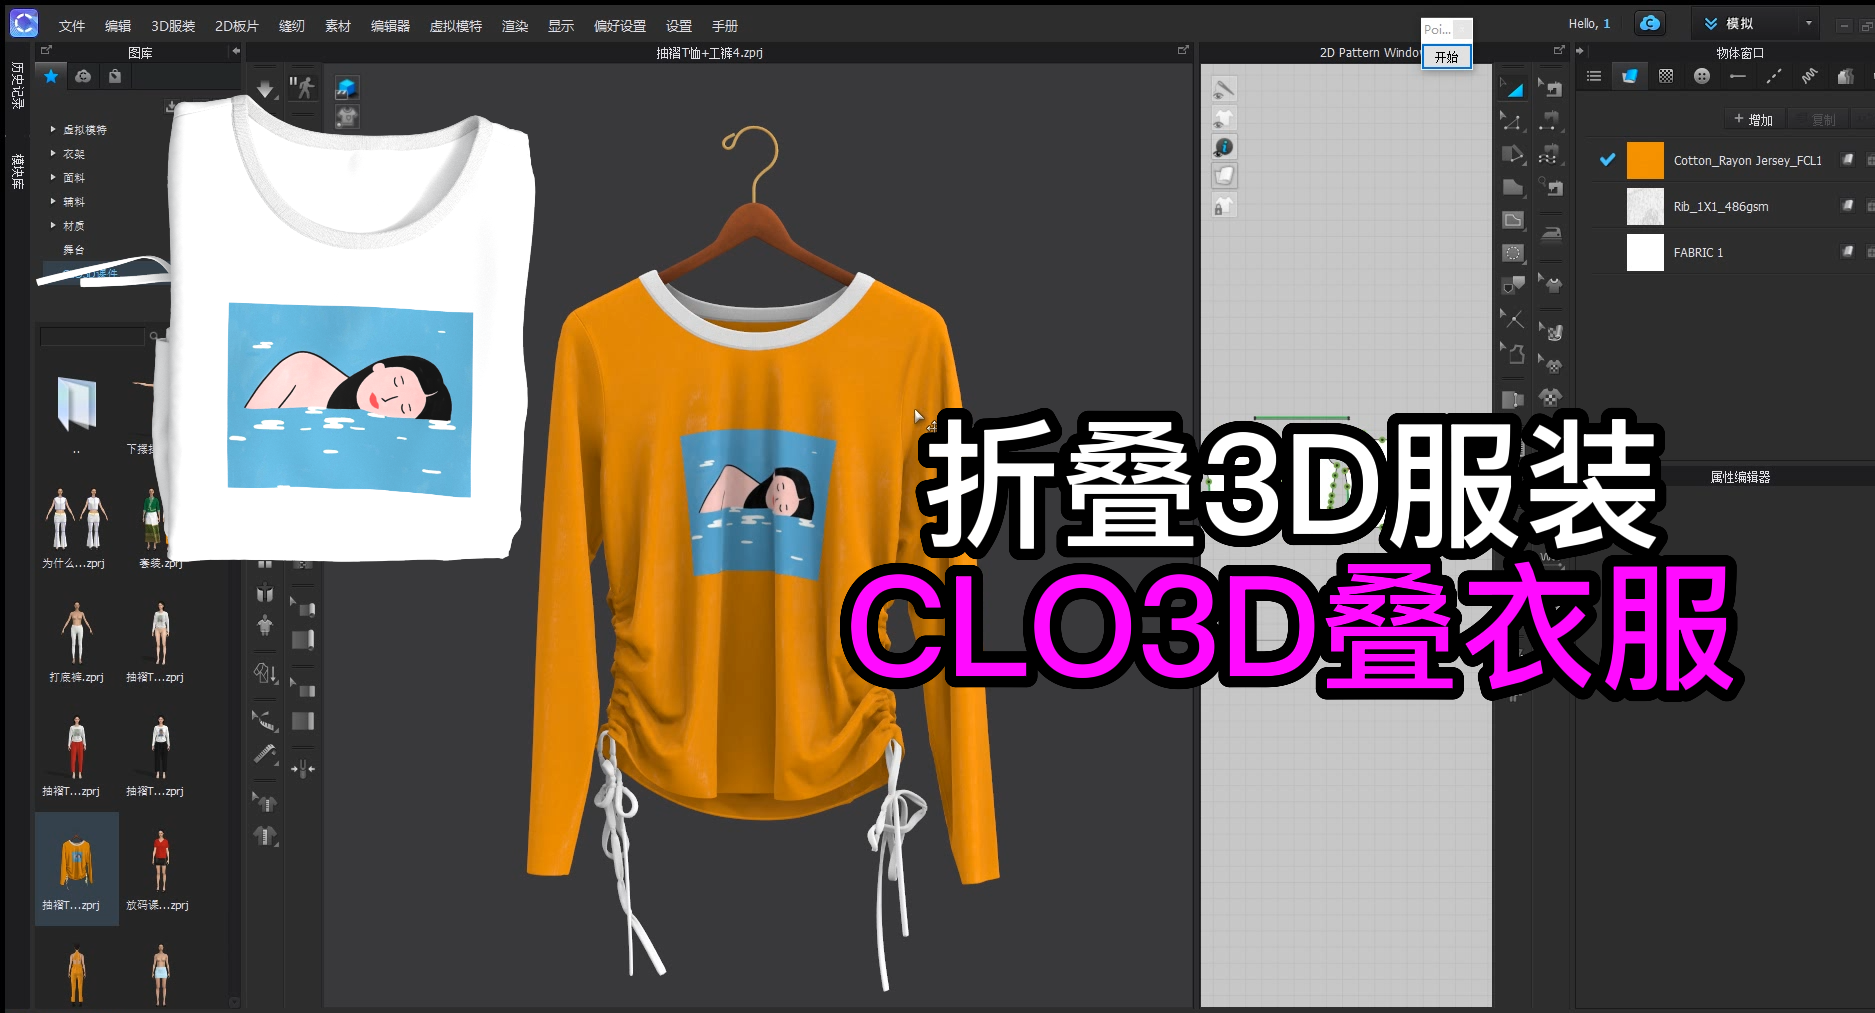 103折叠3D服装-CLO3D叠衣服.png